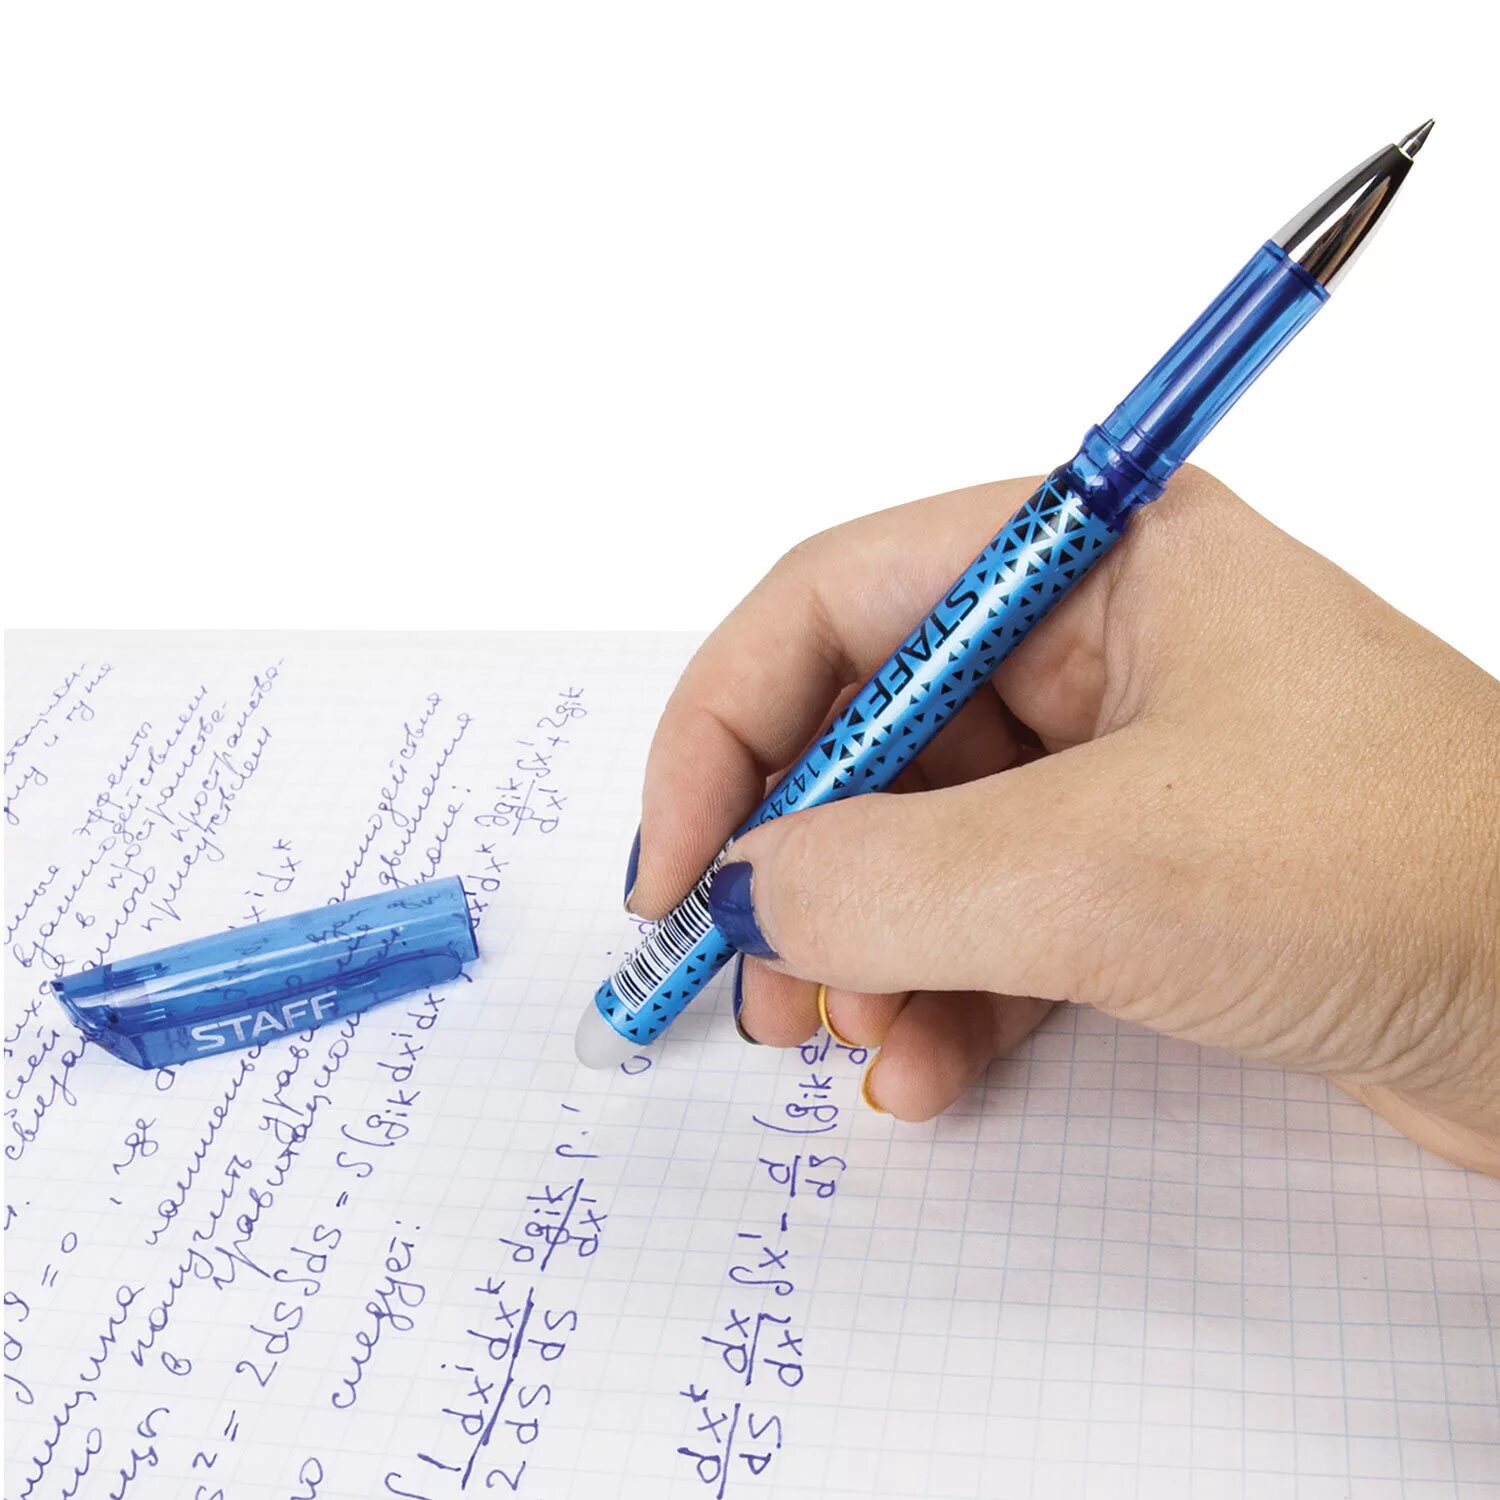 Ручка гелевая staff. Ручка гелевая со стираемыми синими чернилами "staff" 0.5мм. Ручка стираемая шариковая Erasable Zebra пиши-стирай синяя. Гелевая ручка со стёркой. Что можно делать ручкой